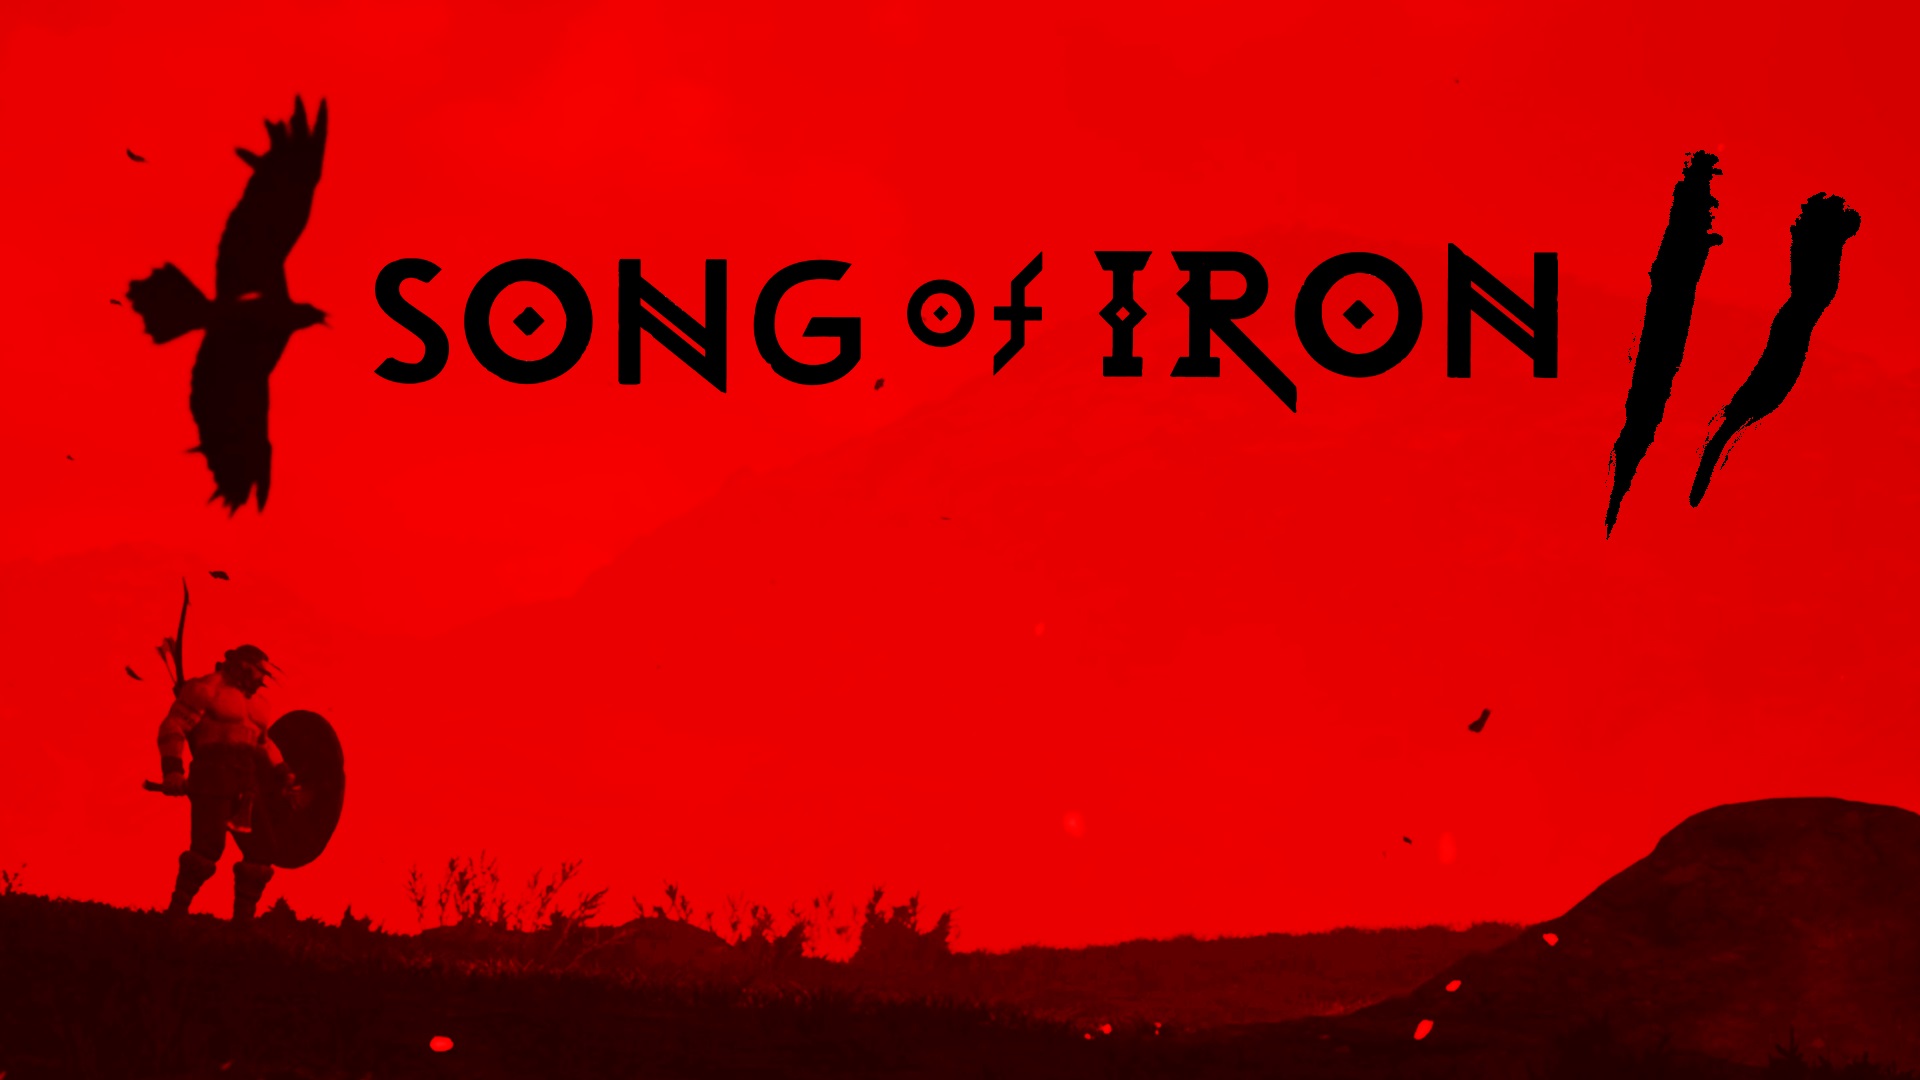 Song of Iron II